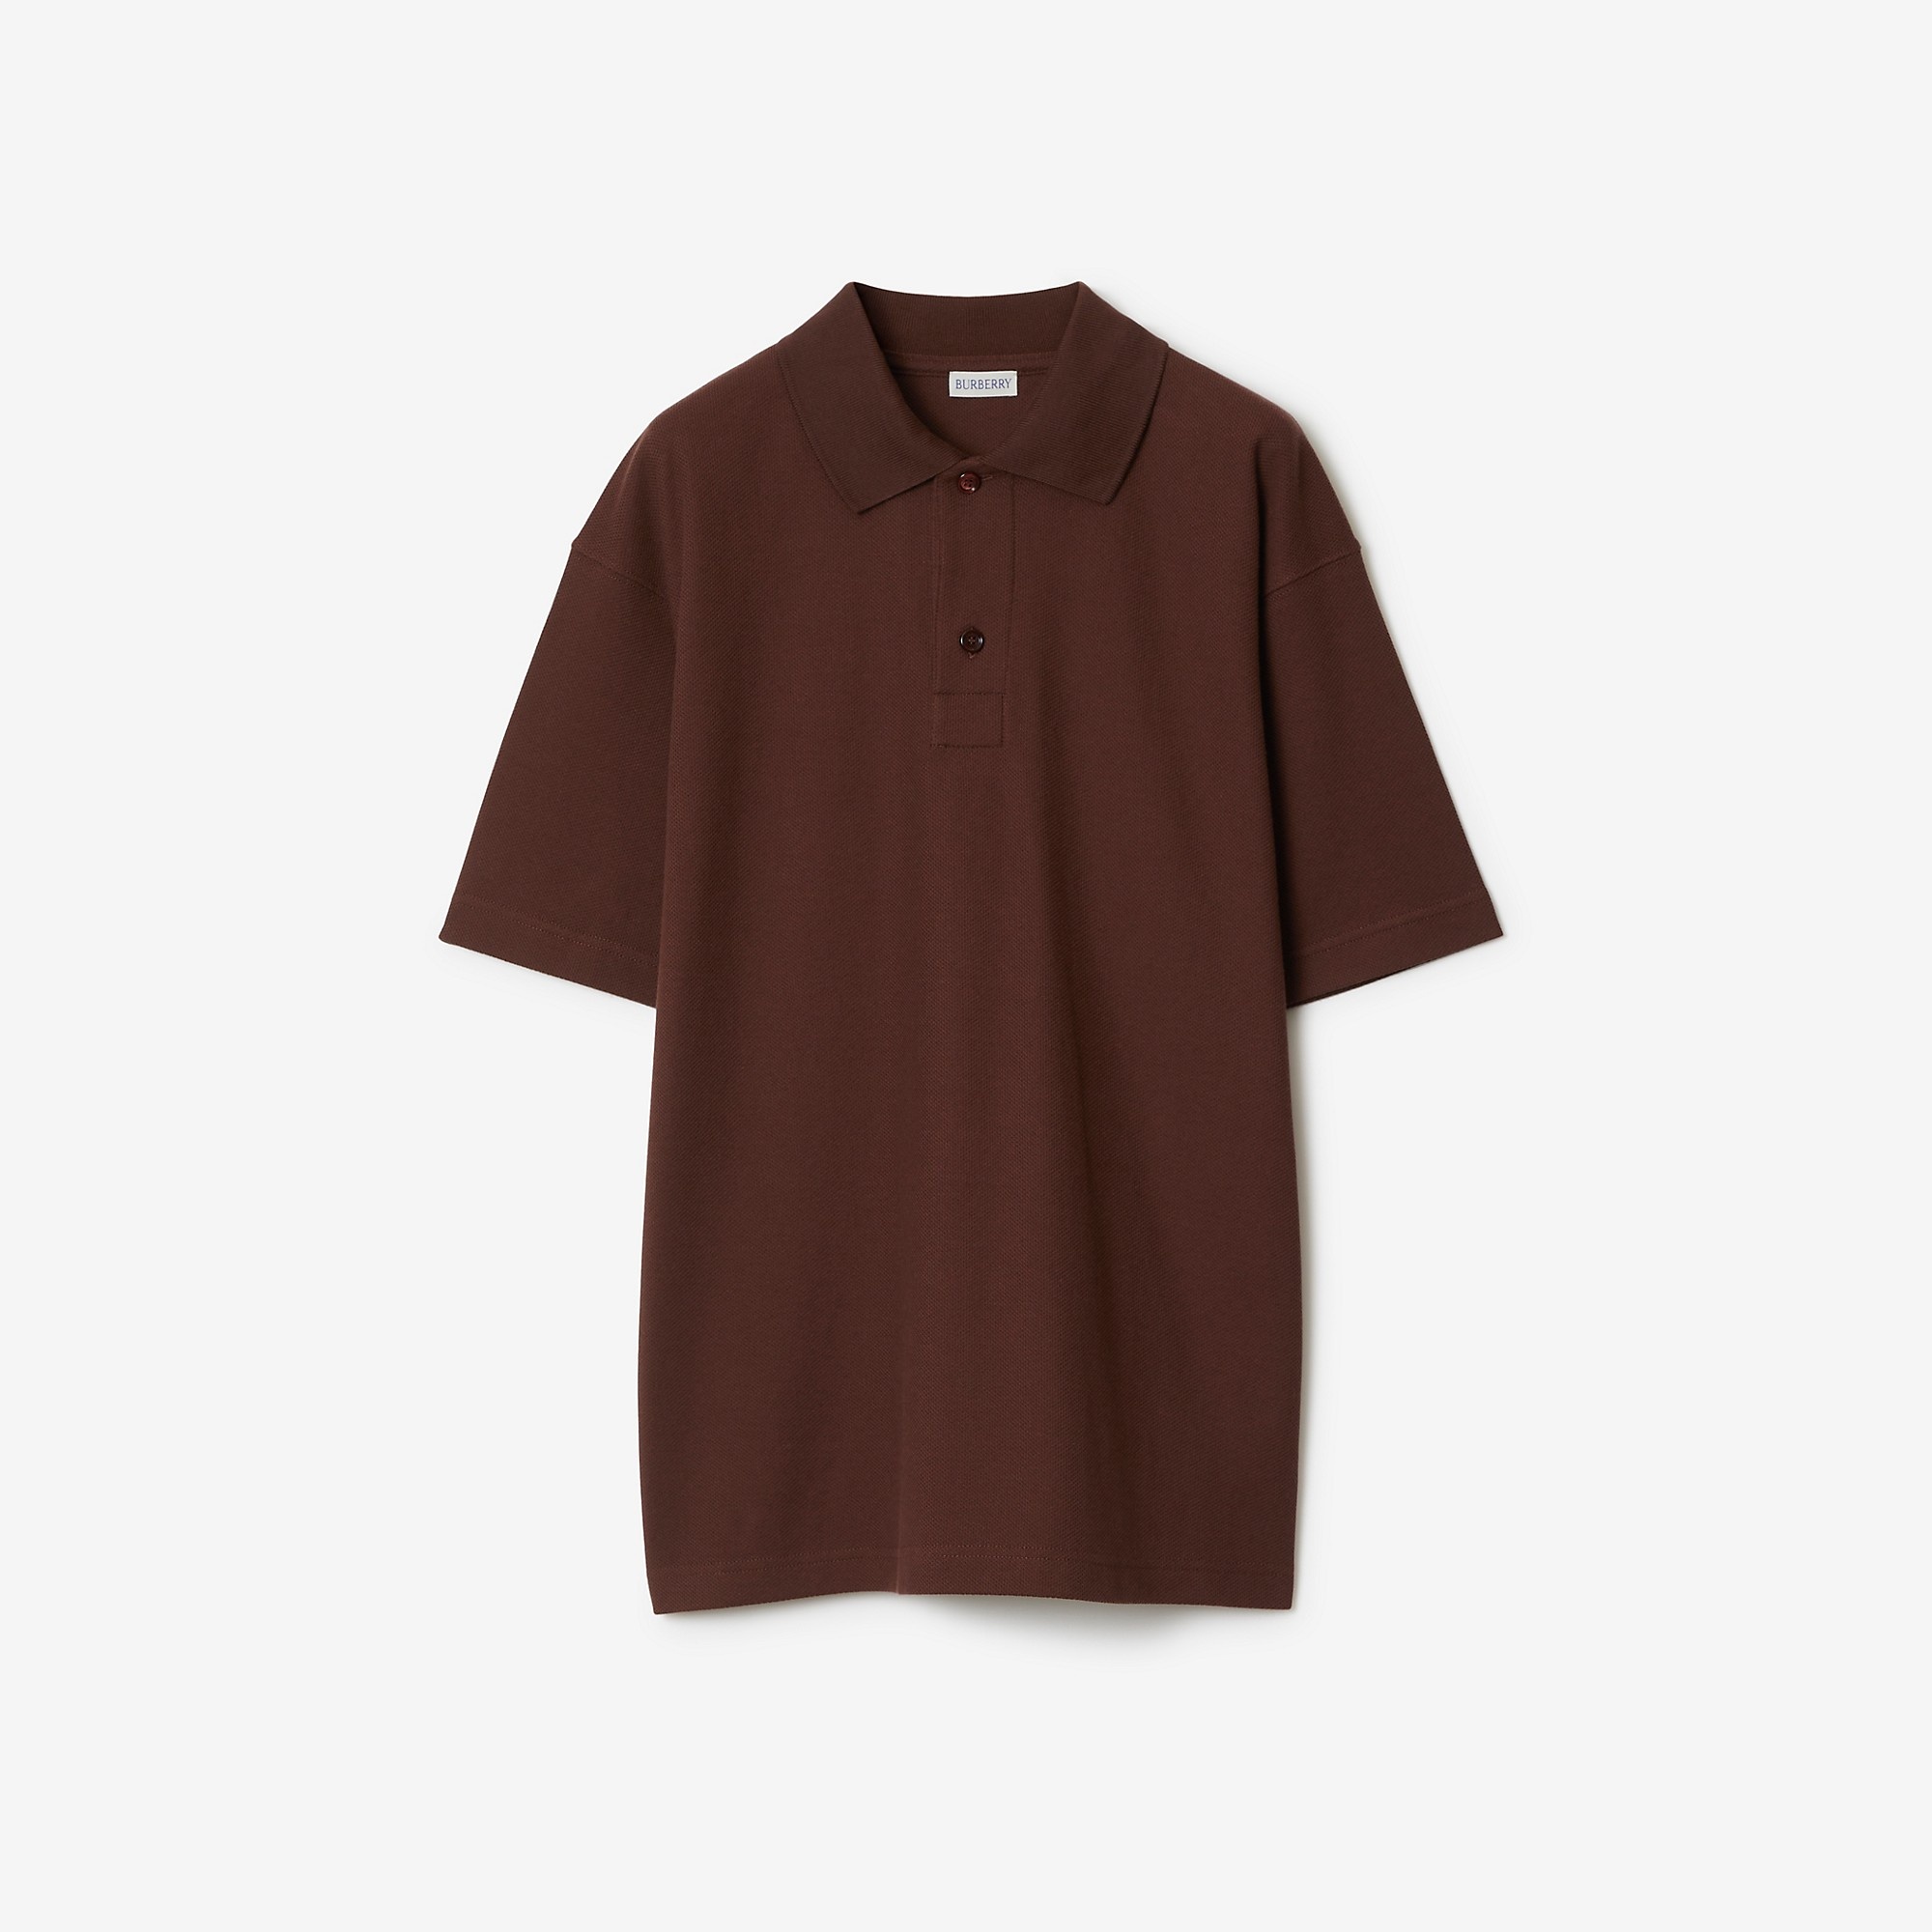 Cotton Polo Shirt - 1